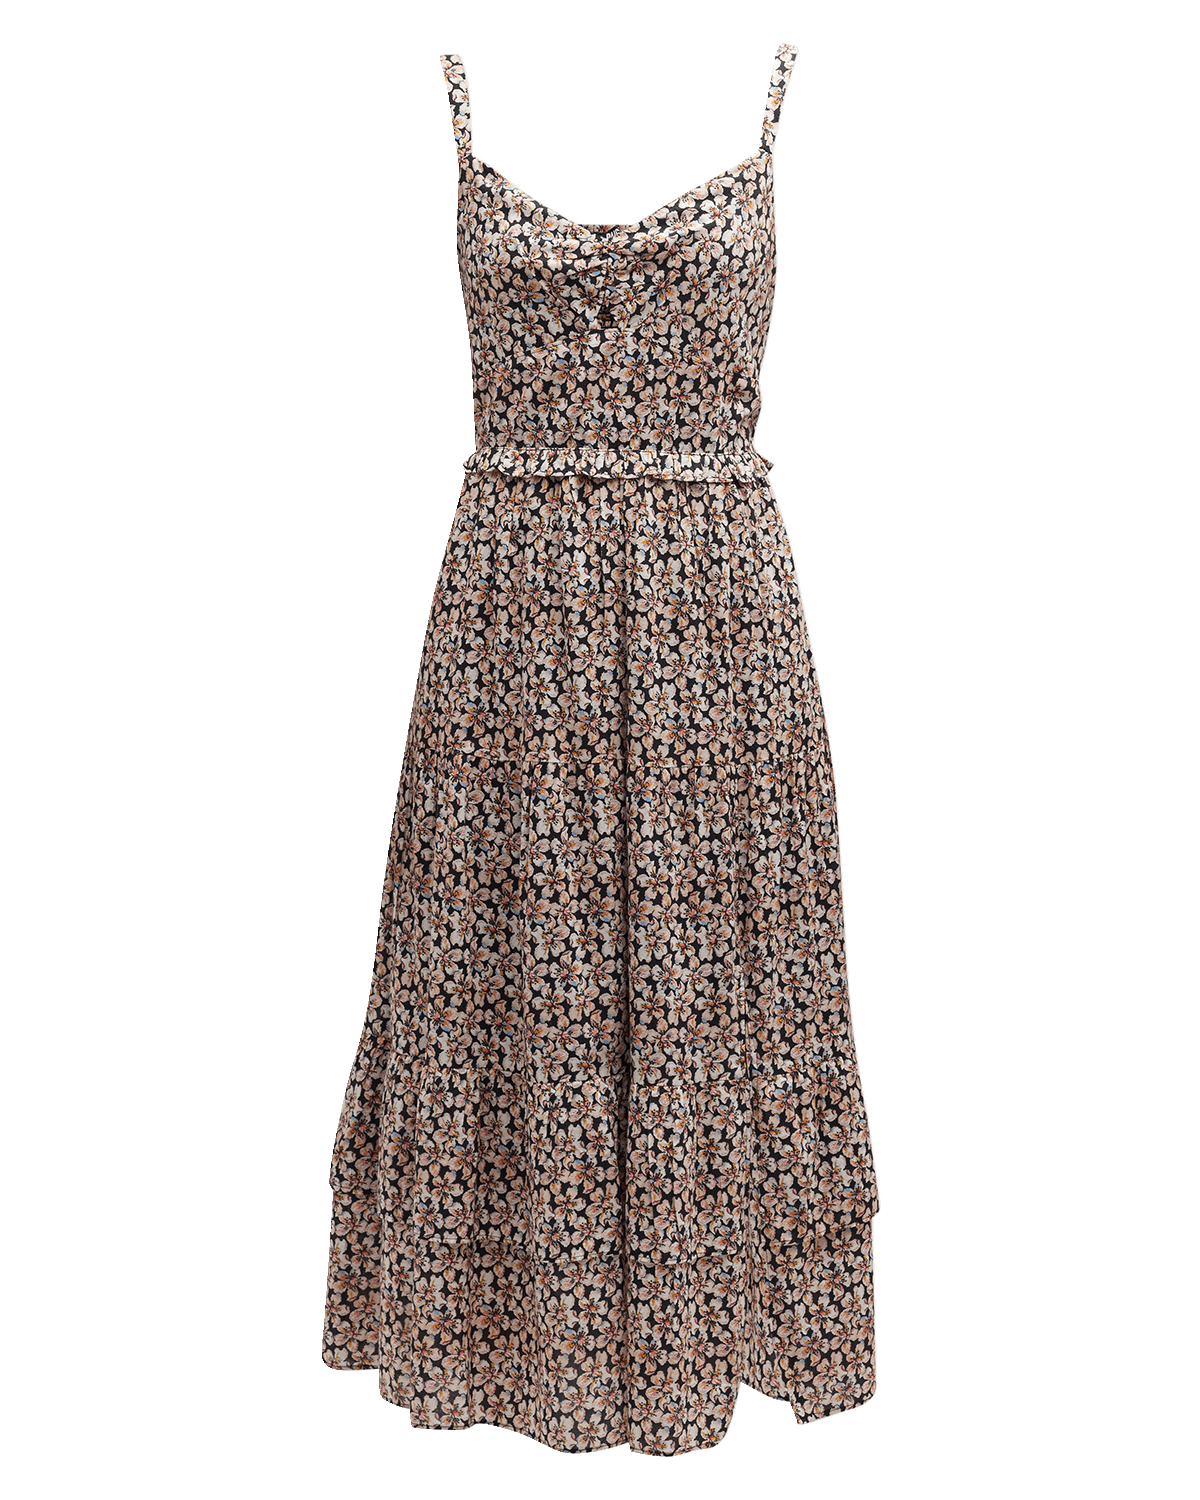 Nanette Lepore Center Stage Sleeveless Shift Dress | Neiman Marcus